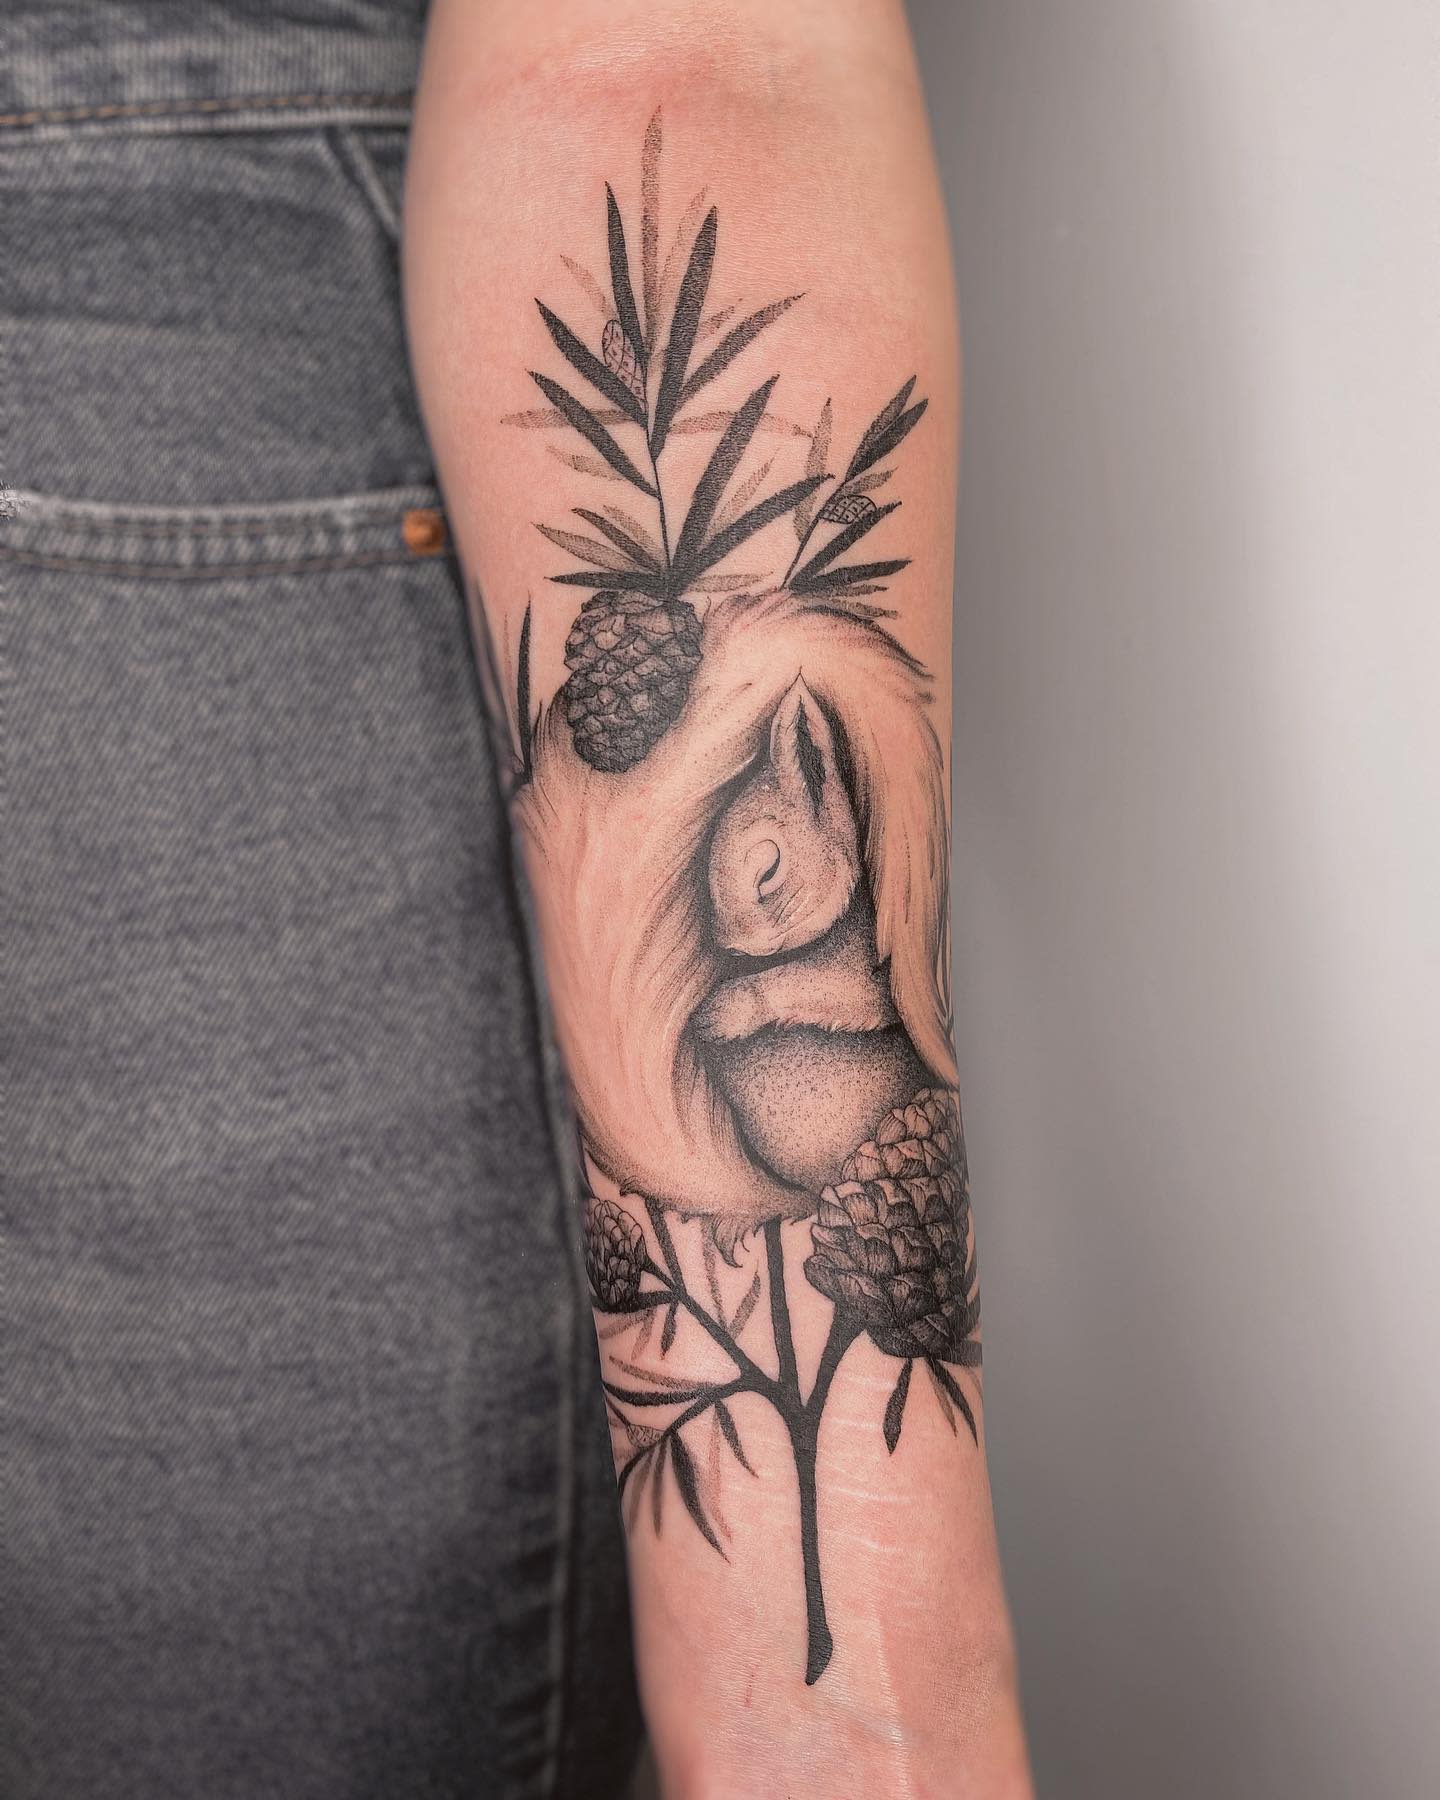 Fancy Squirrel by Eva  Desperado Tattoos Eindhoven The Netherlands  r tattoos